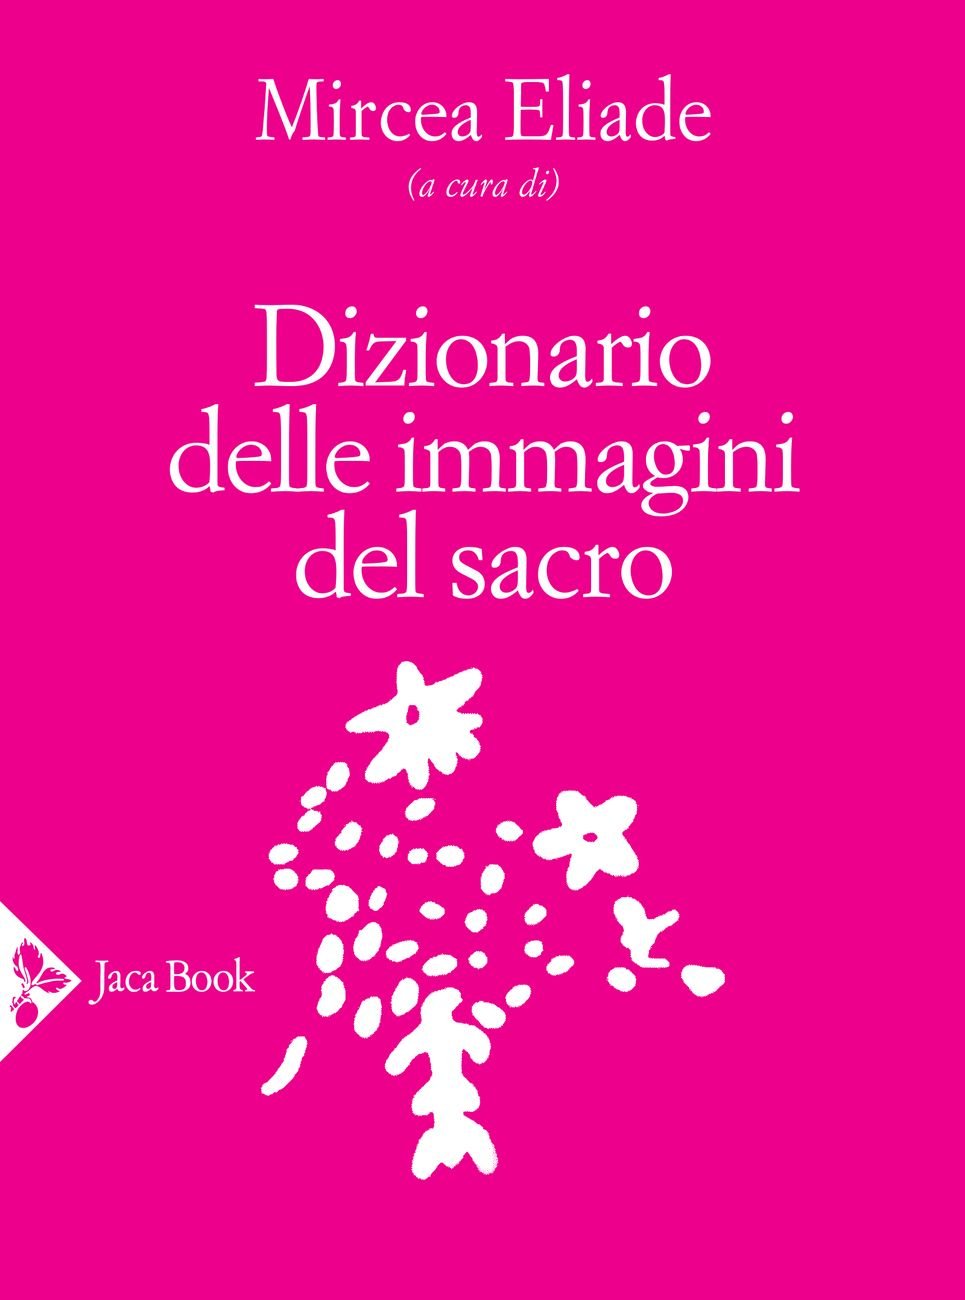 Mircea Eliade (a cura di) – Dizionario delle immagini del sacro (Jaca Book, Milano 2020)